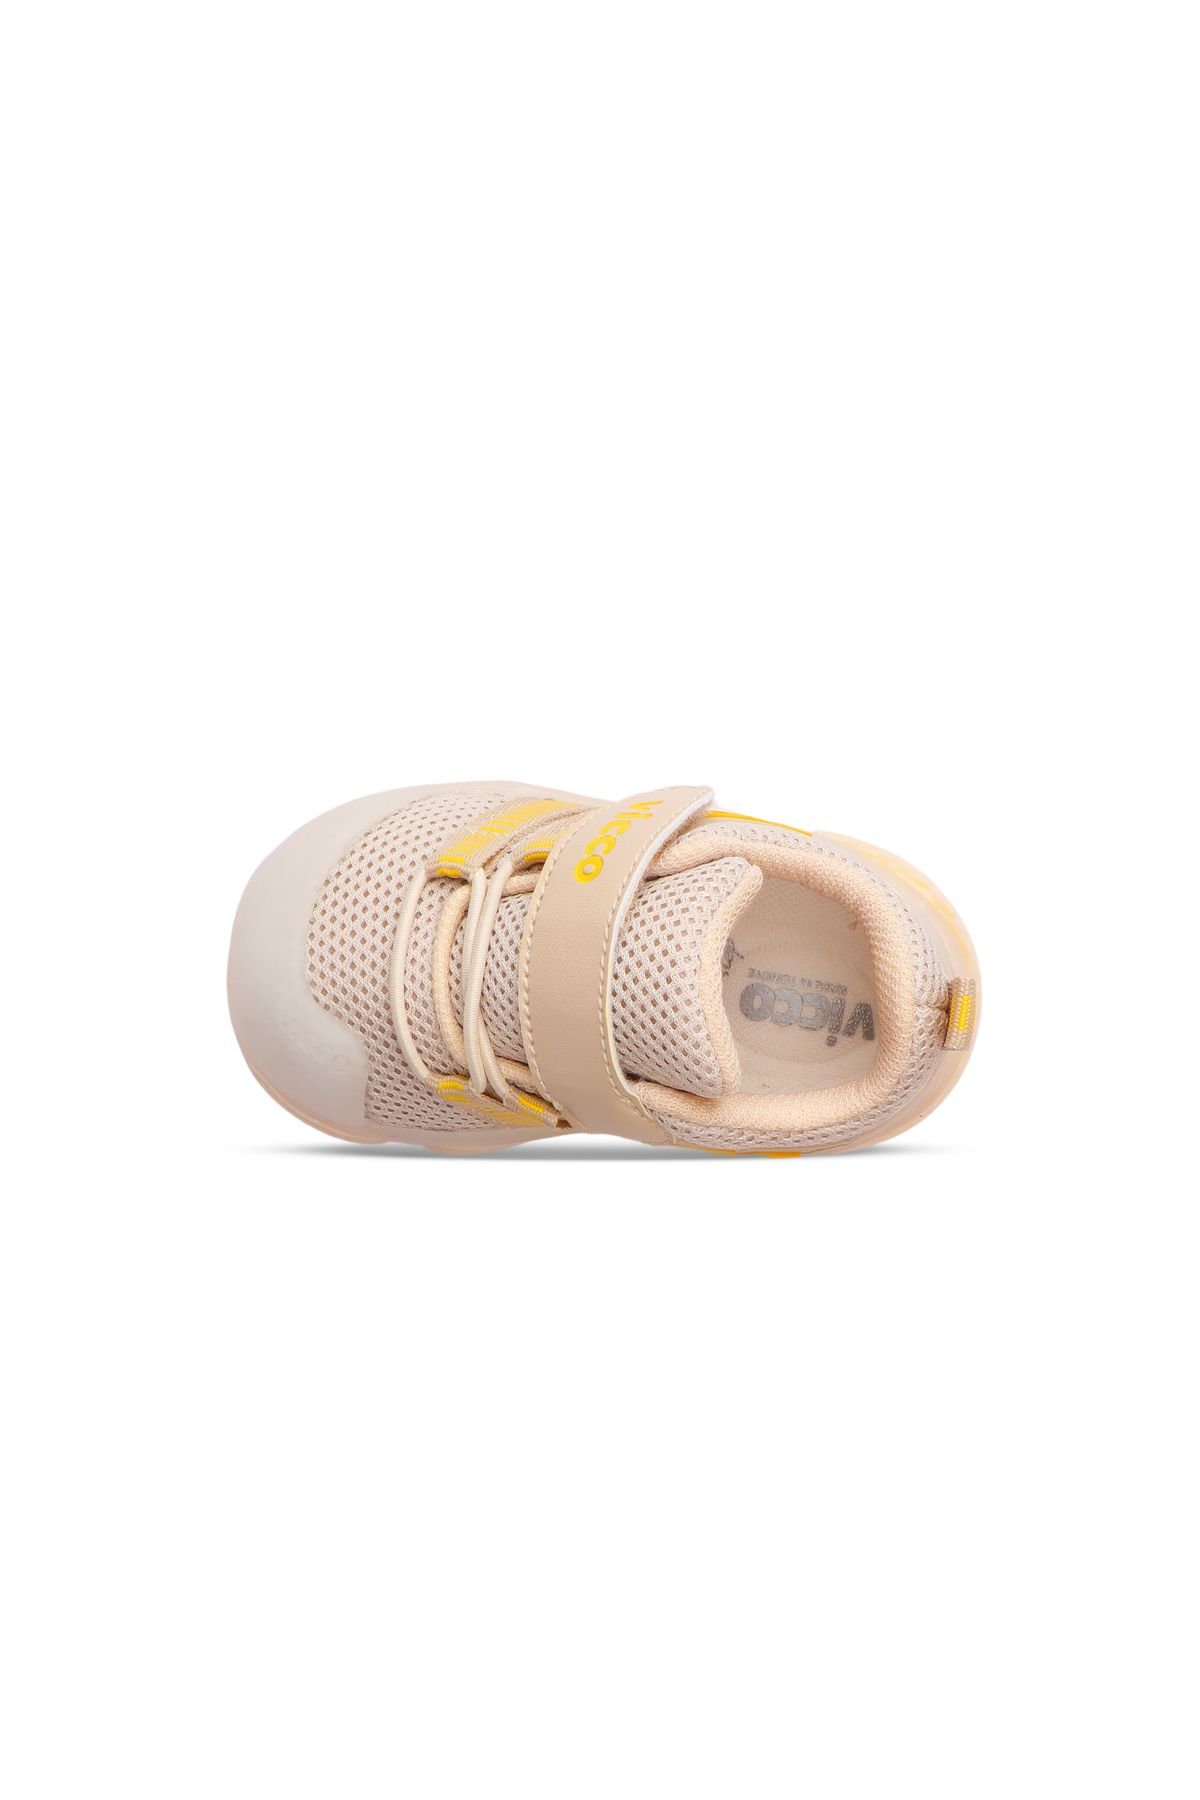 Vicco ORENTE 150 İlk Adım Işıklı Bebek Ayakkabısı